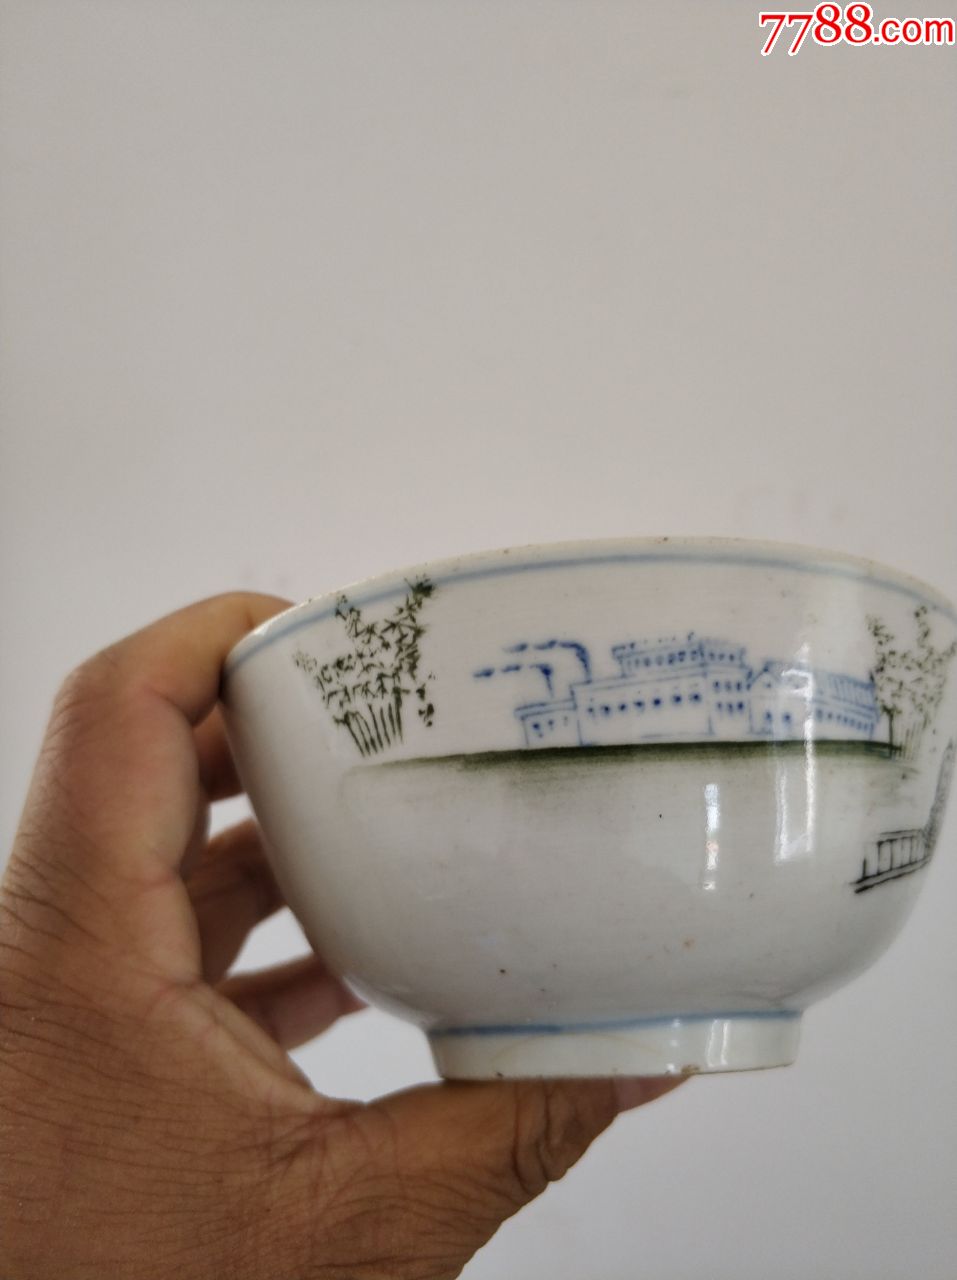 全品瓷器碗,保老保真,六七十年代